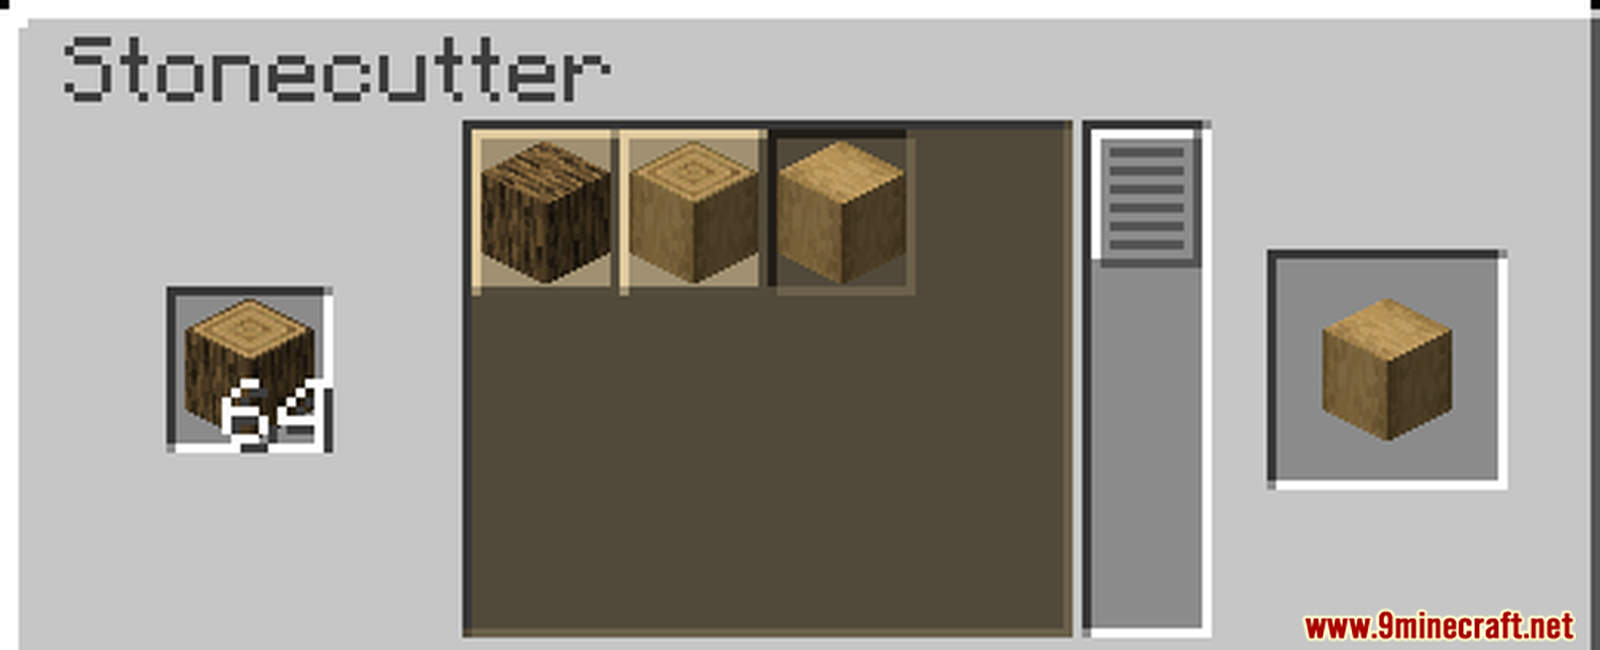 Woodcutter Data Pack Screenshots (5)